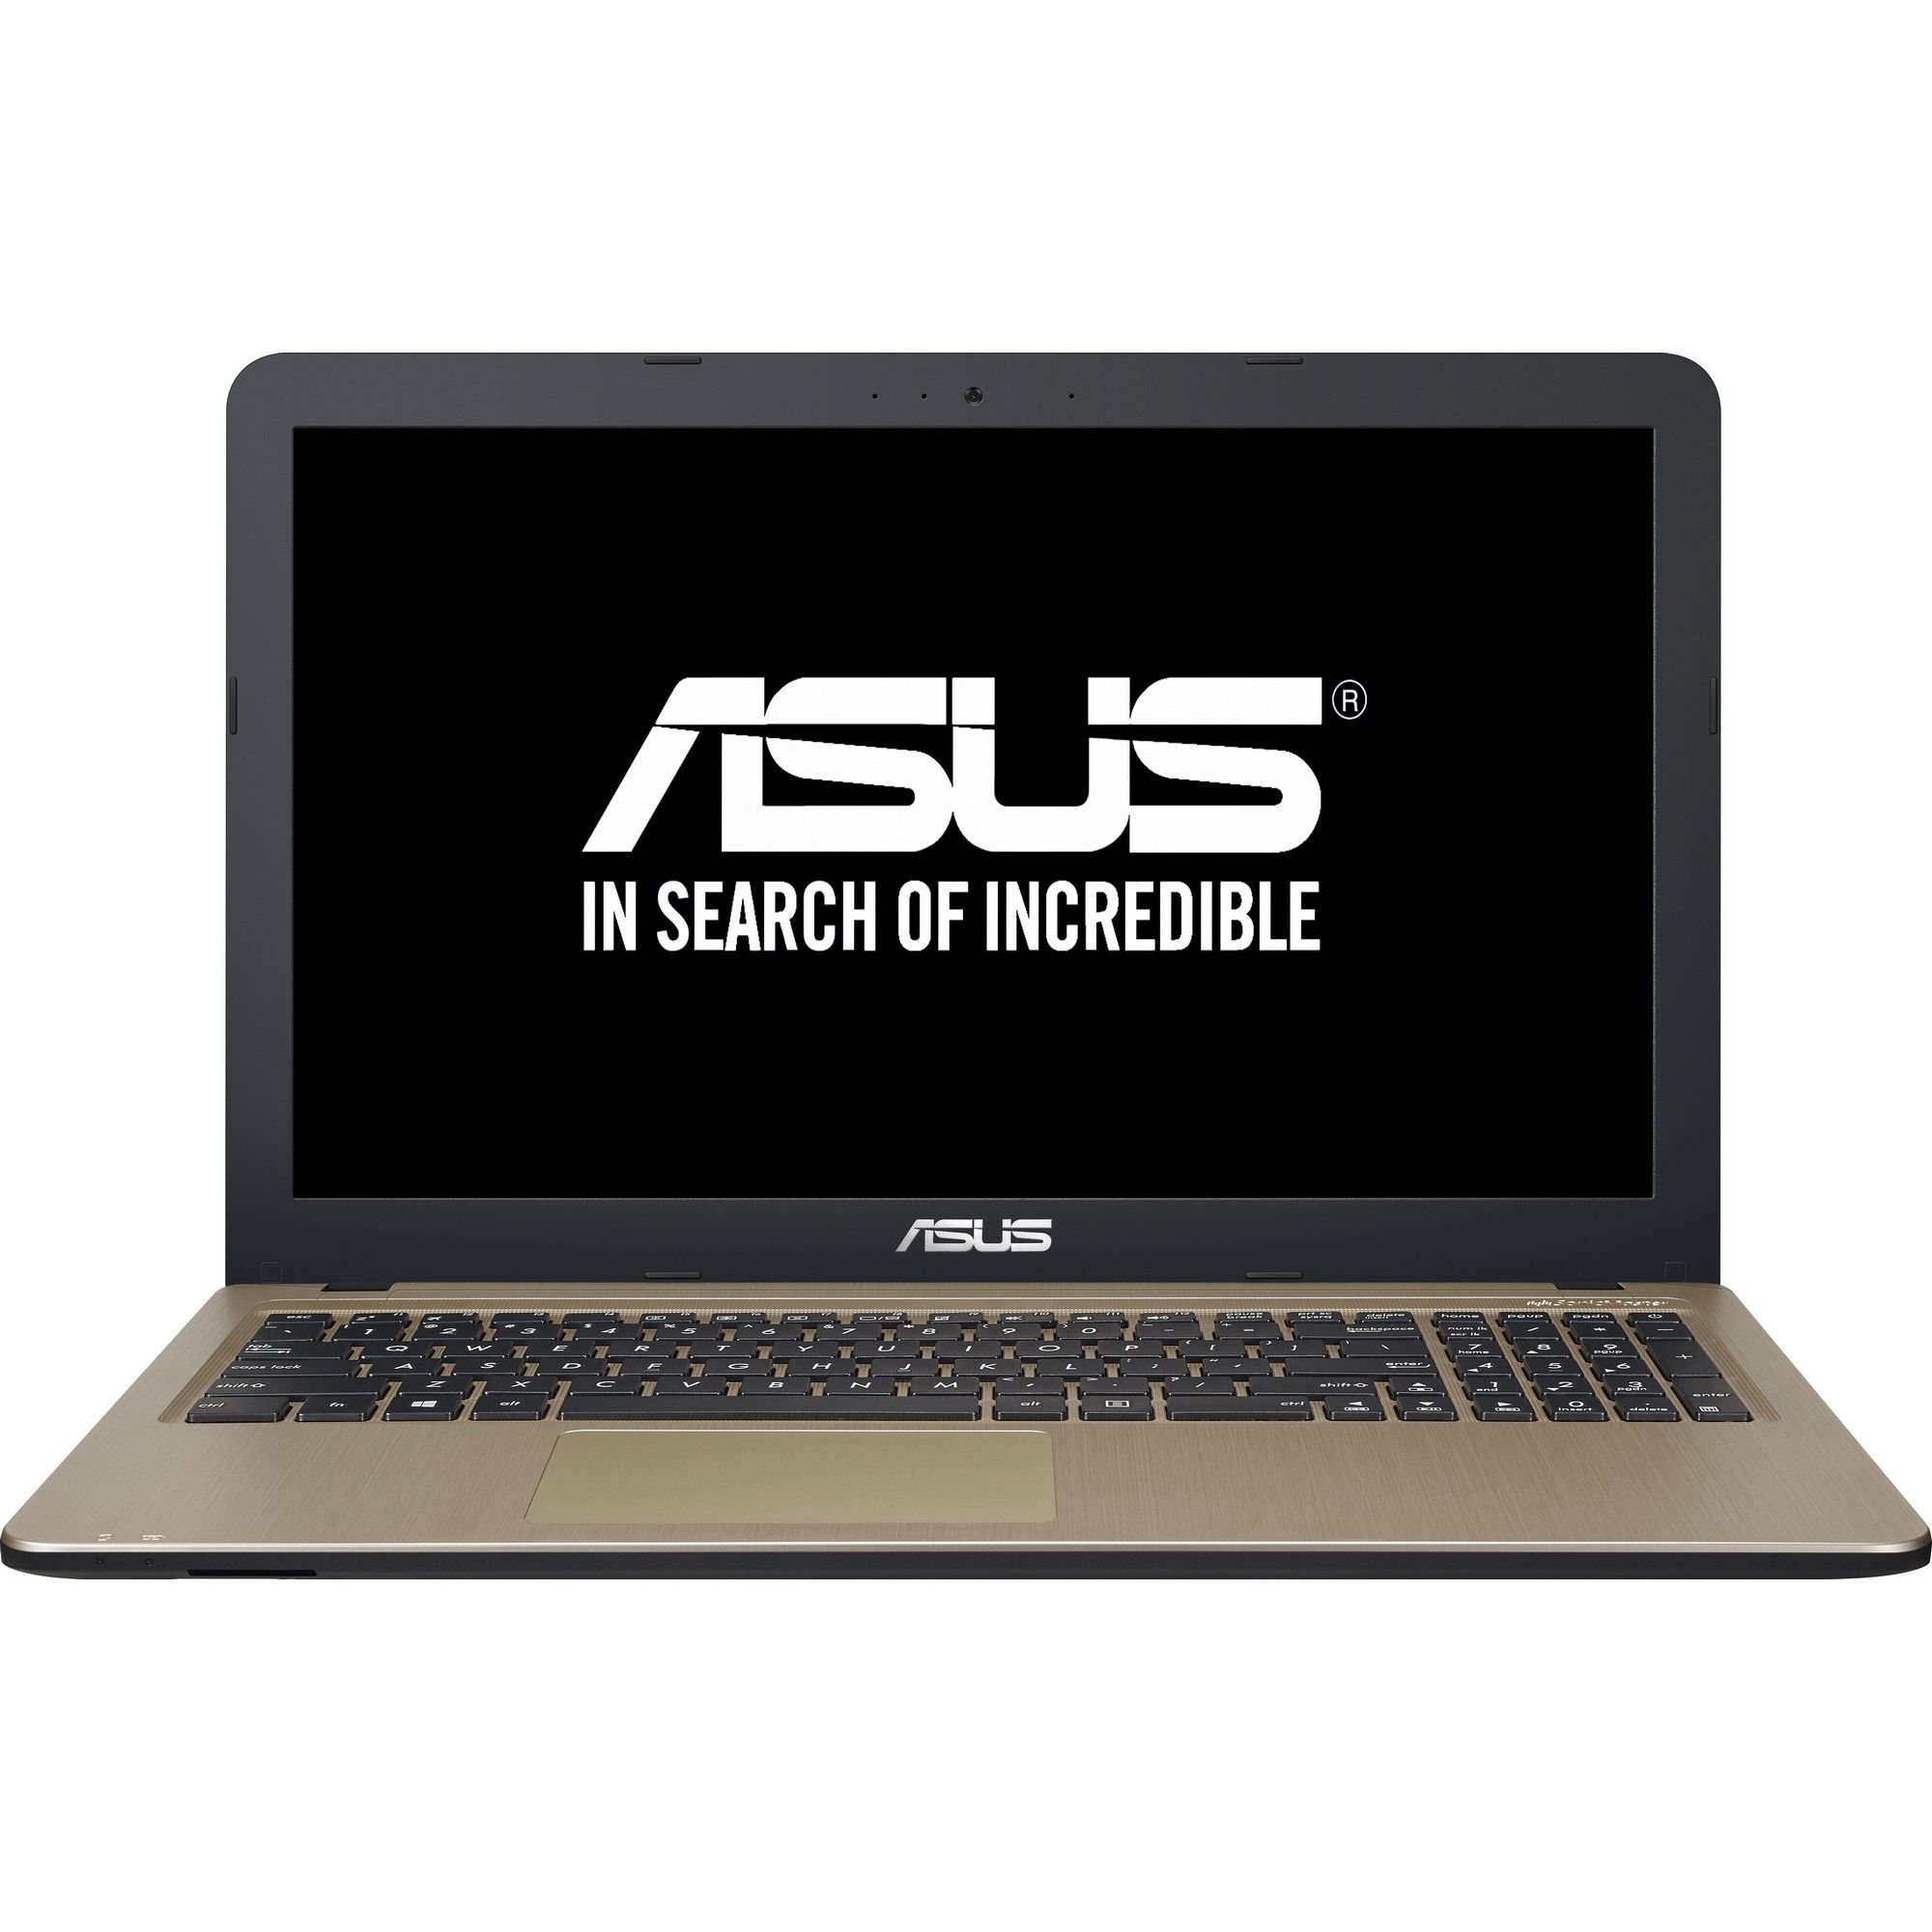  Laptop Asus X540LJ-XX001D, Intel Core i3-4005U, 4GB DDR4, HDD 500GB, nVidia GeForce 920M 2GB, Free DOS 